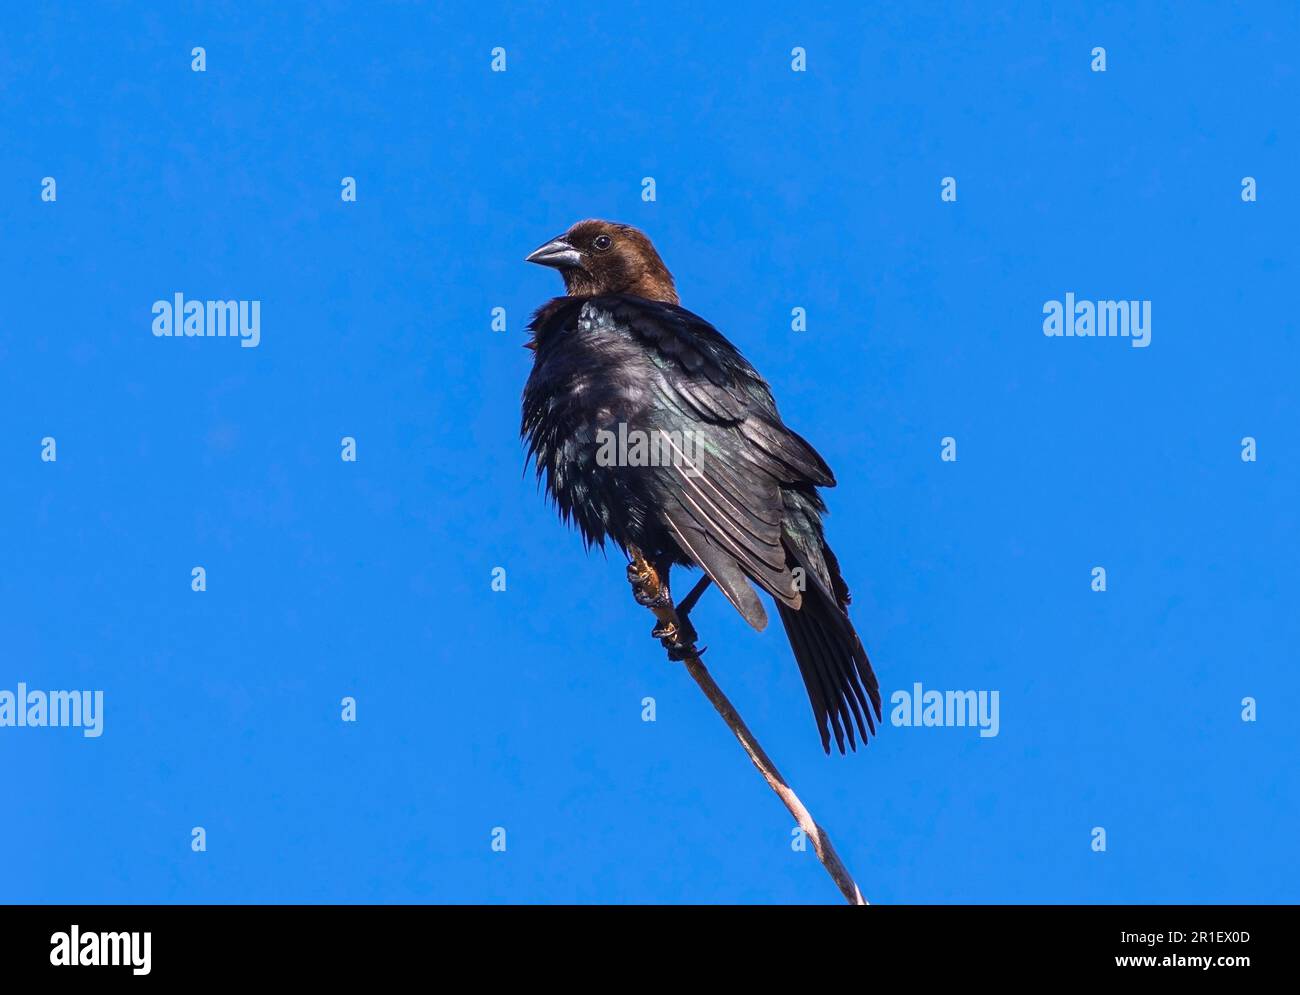 Un Cowbird à tête brune assis sur une perchaude contre un ciel bleu profond, secouant ses plumes sombres étincelantes au soleil. Banque D'Images